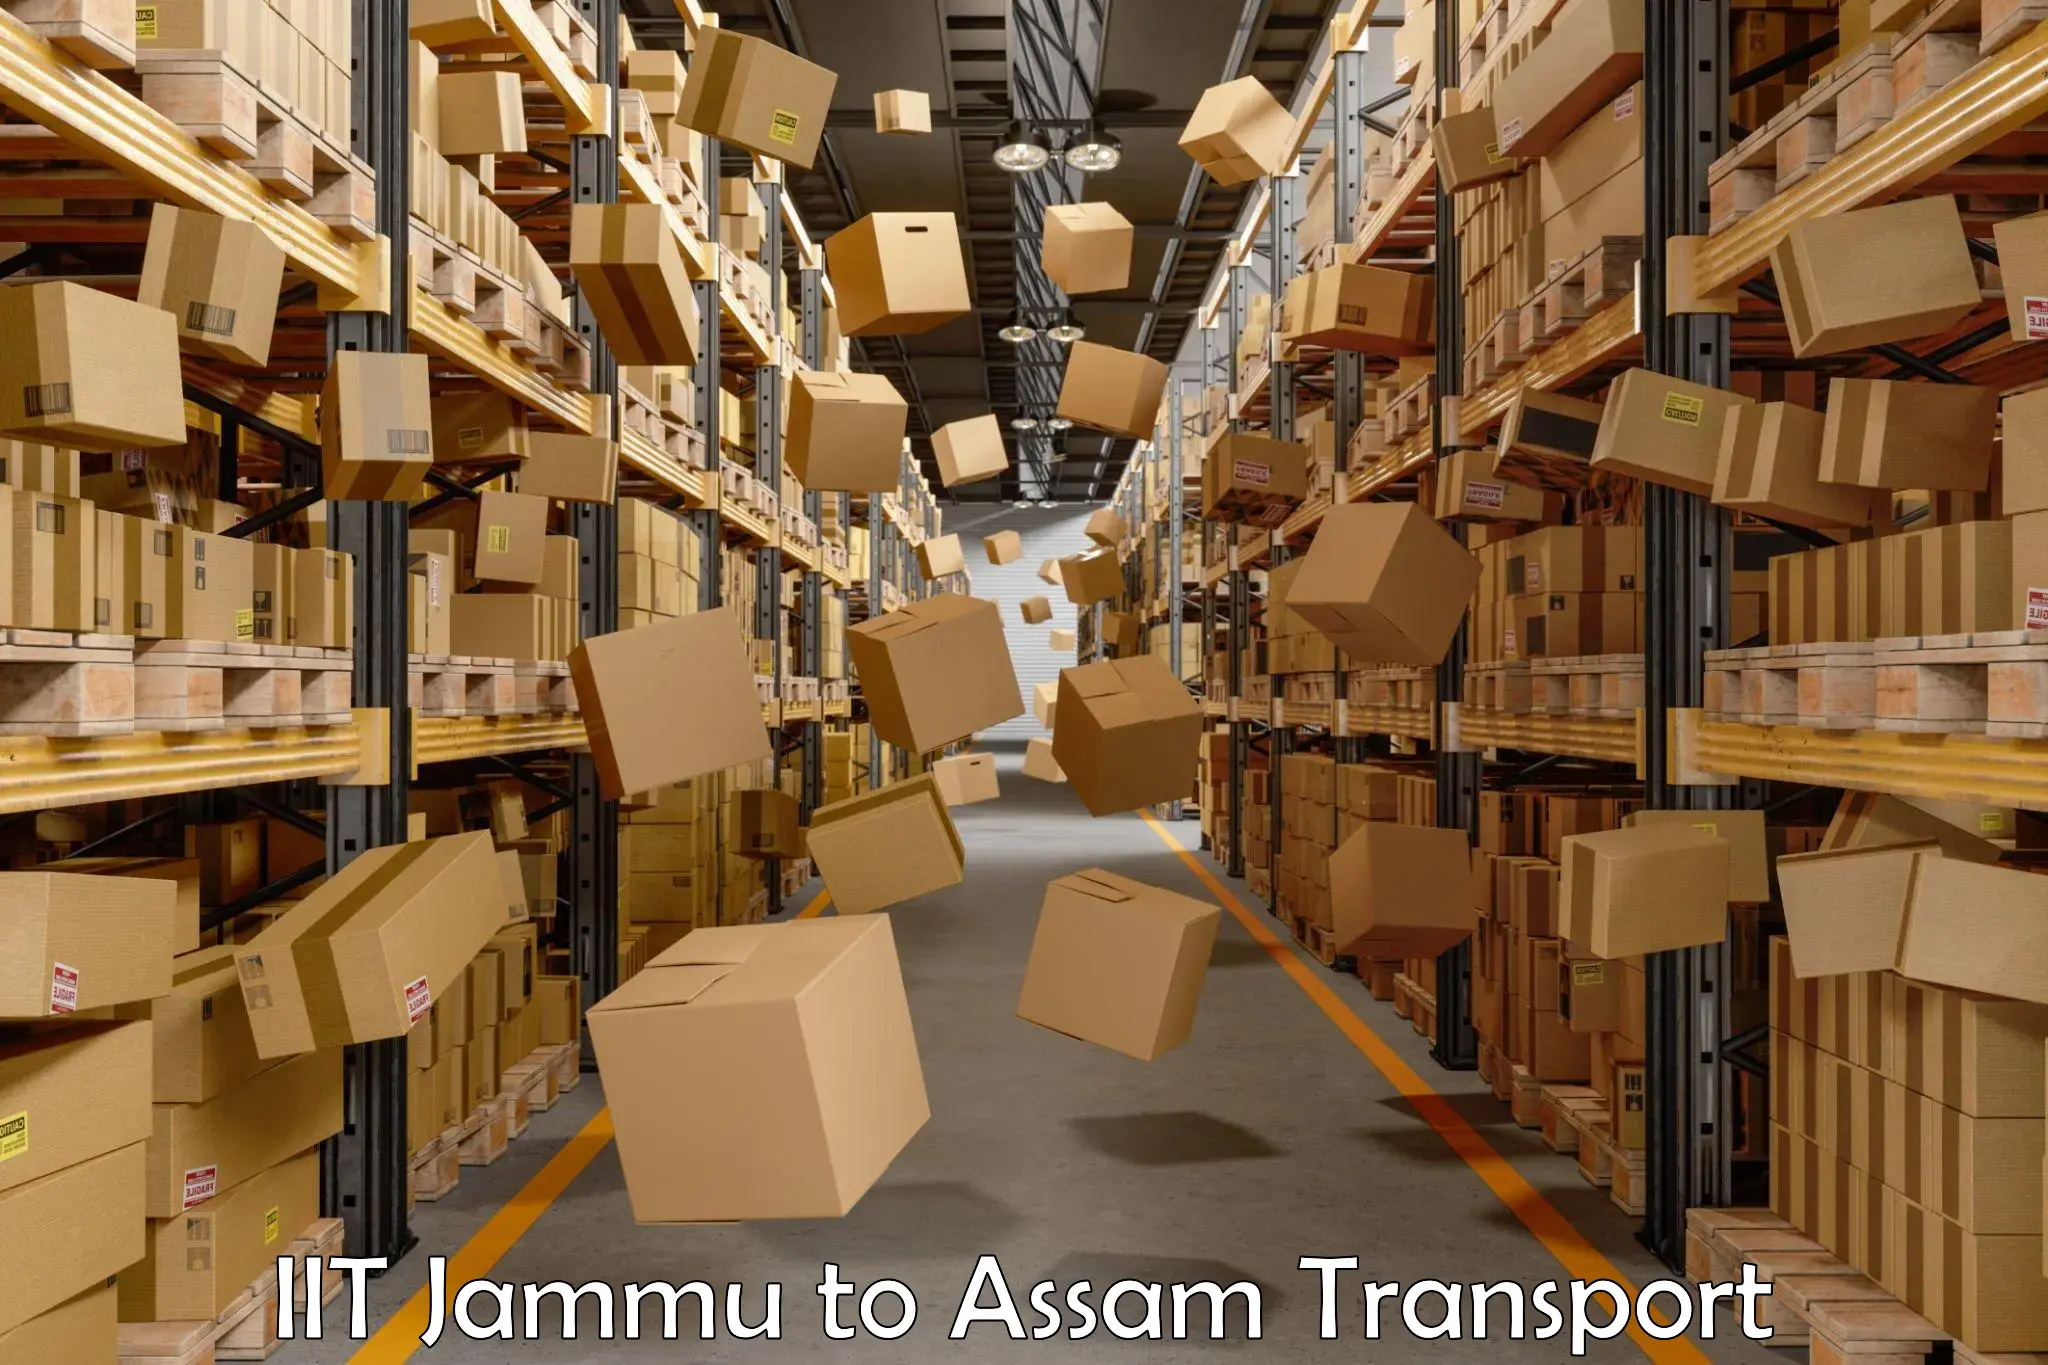 Pick up transport service IIT Jammu to Mirza Kamrup